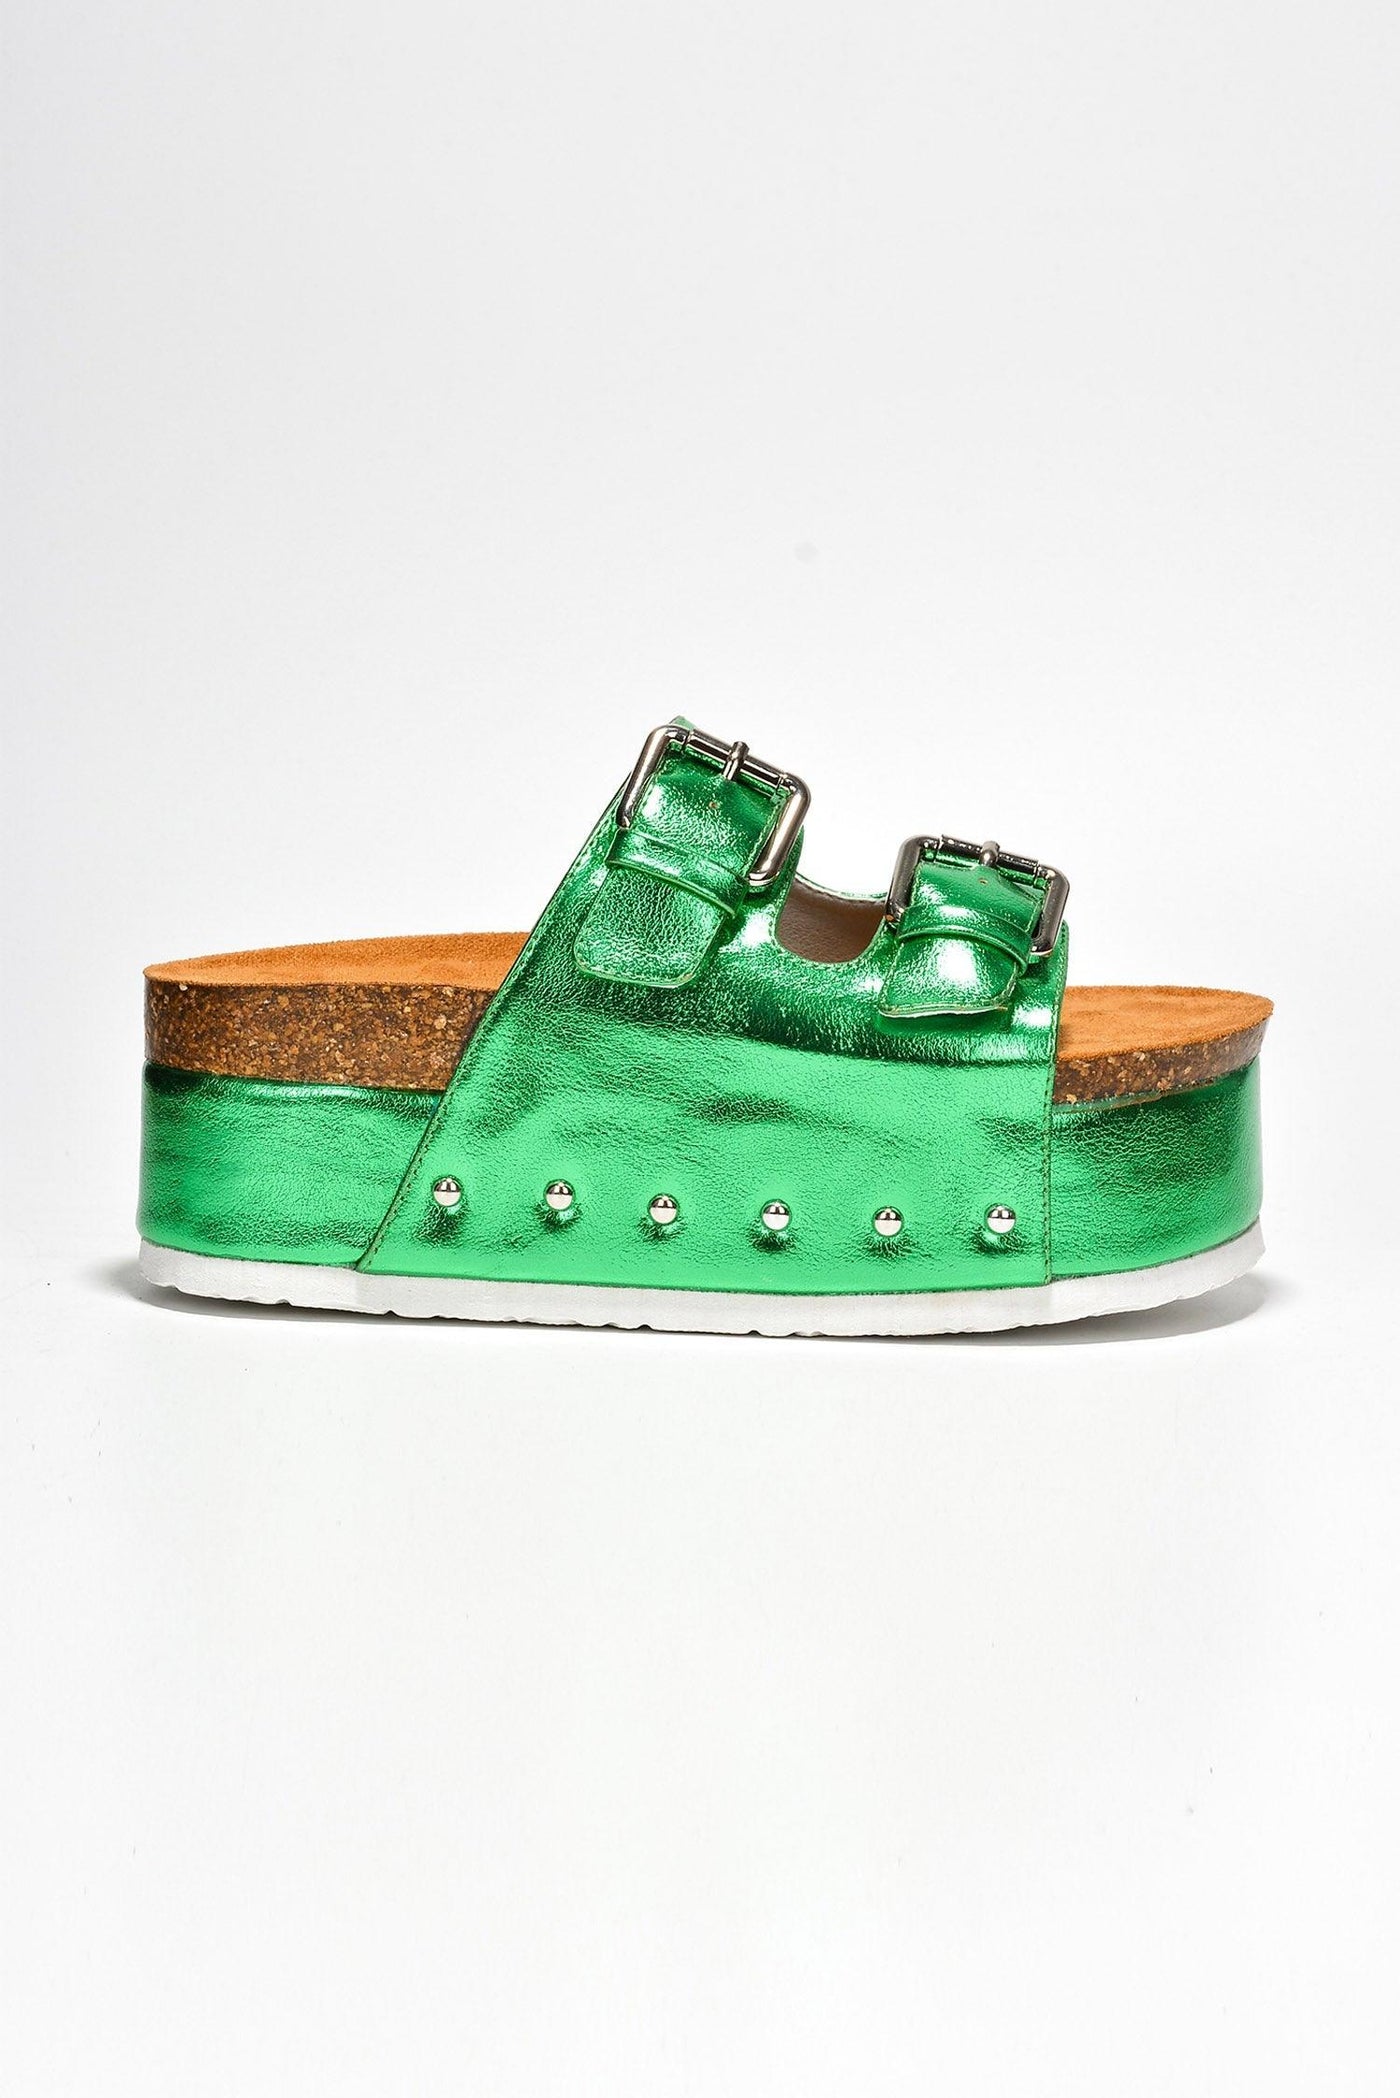 FRANNIE - GREEN - AMIClubwear